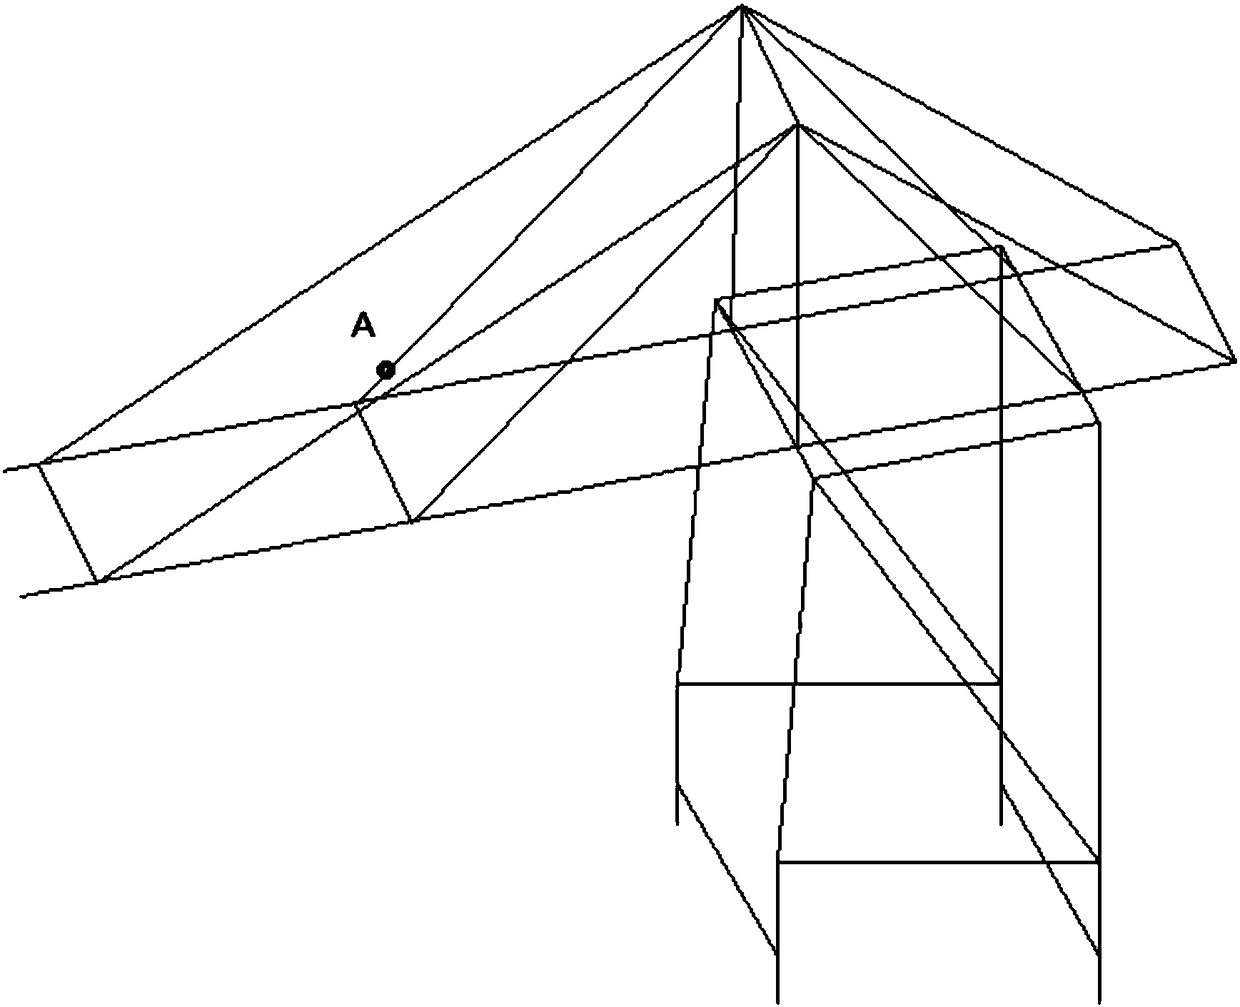 Stress data classification method for pull rod in quay crane based on K-nearest neighbor algorithm